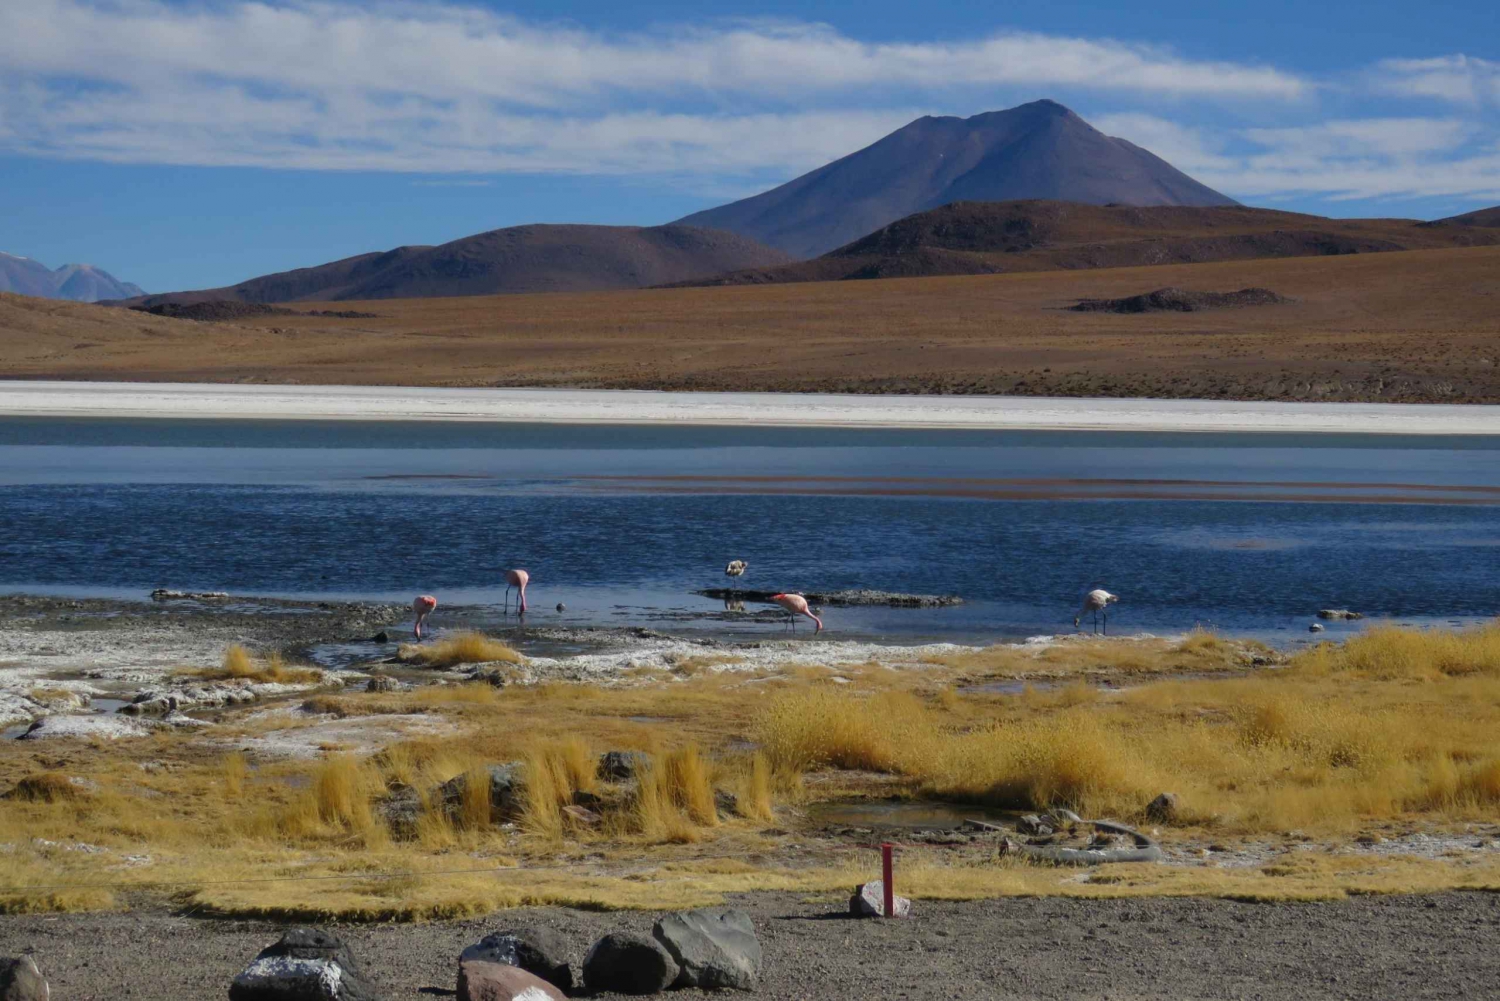 Atacama: Private 3-Day Uyuni Salt Flats Tour